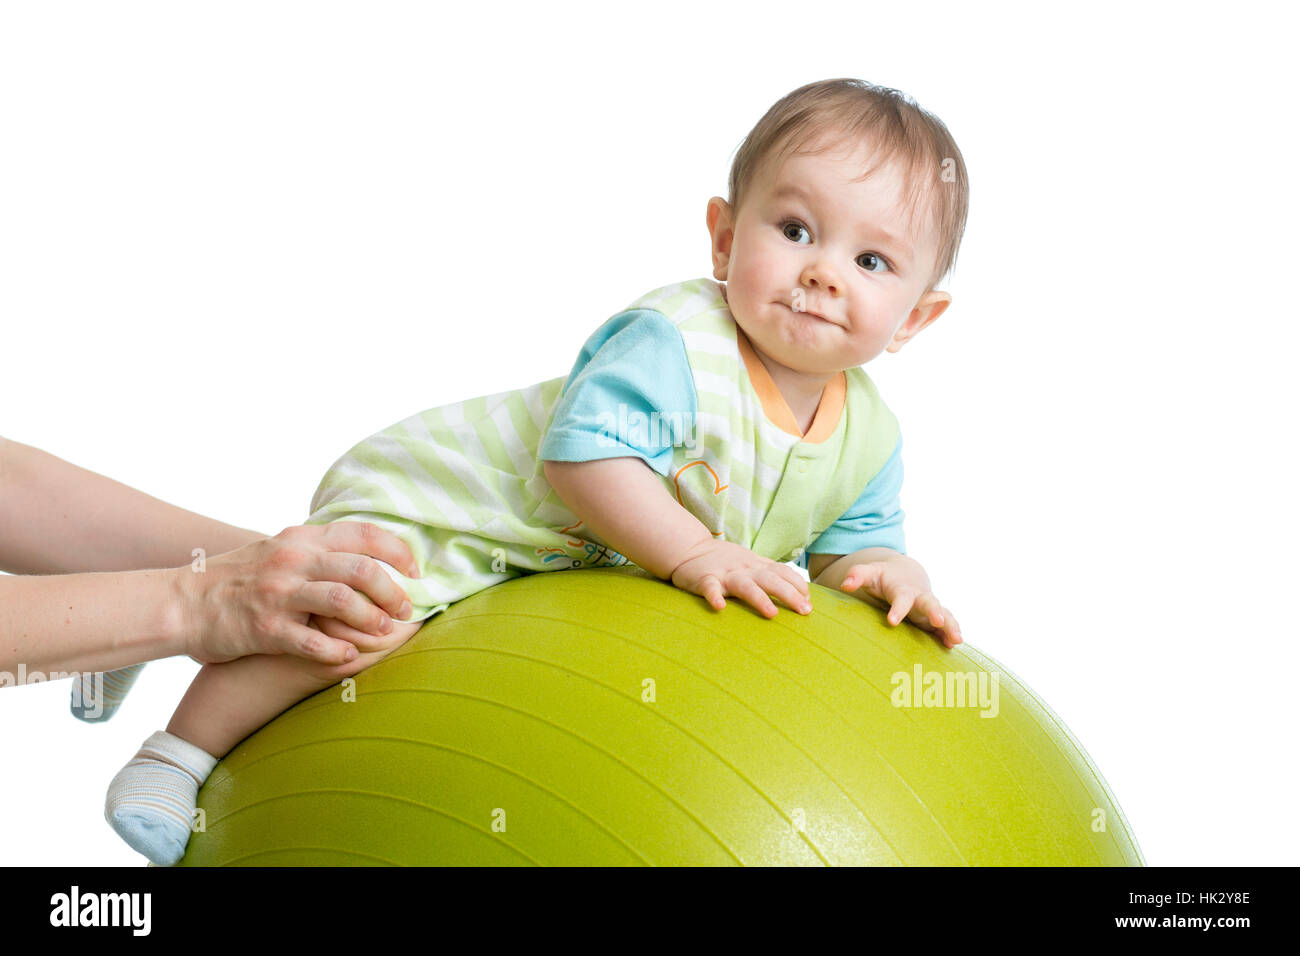 Close-up portrait of smiling baby on fitness ball. L'exercice et de massage, conception de la santé de bébé Banque D'Images